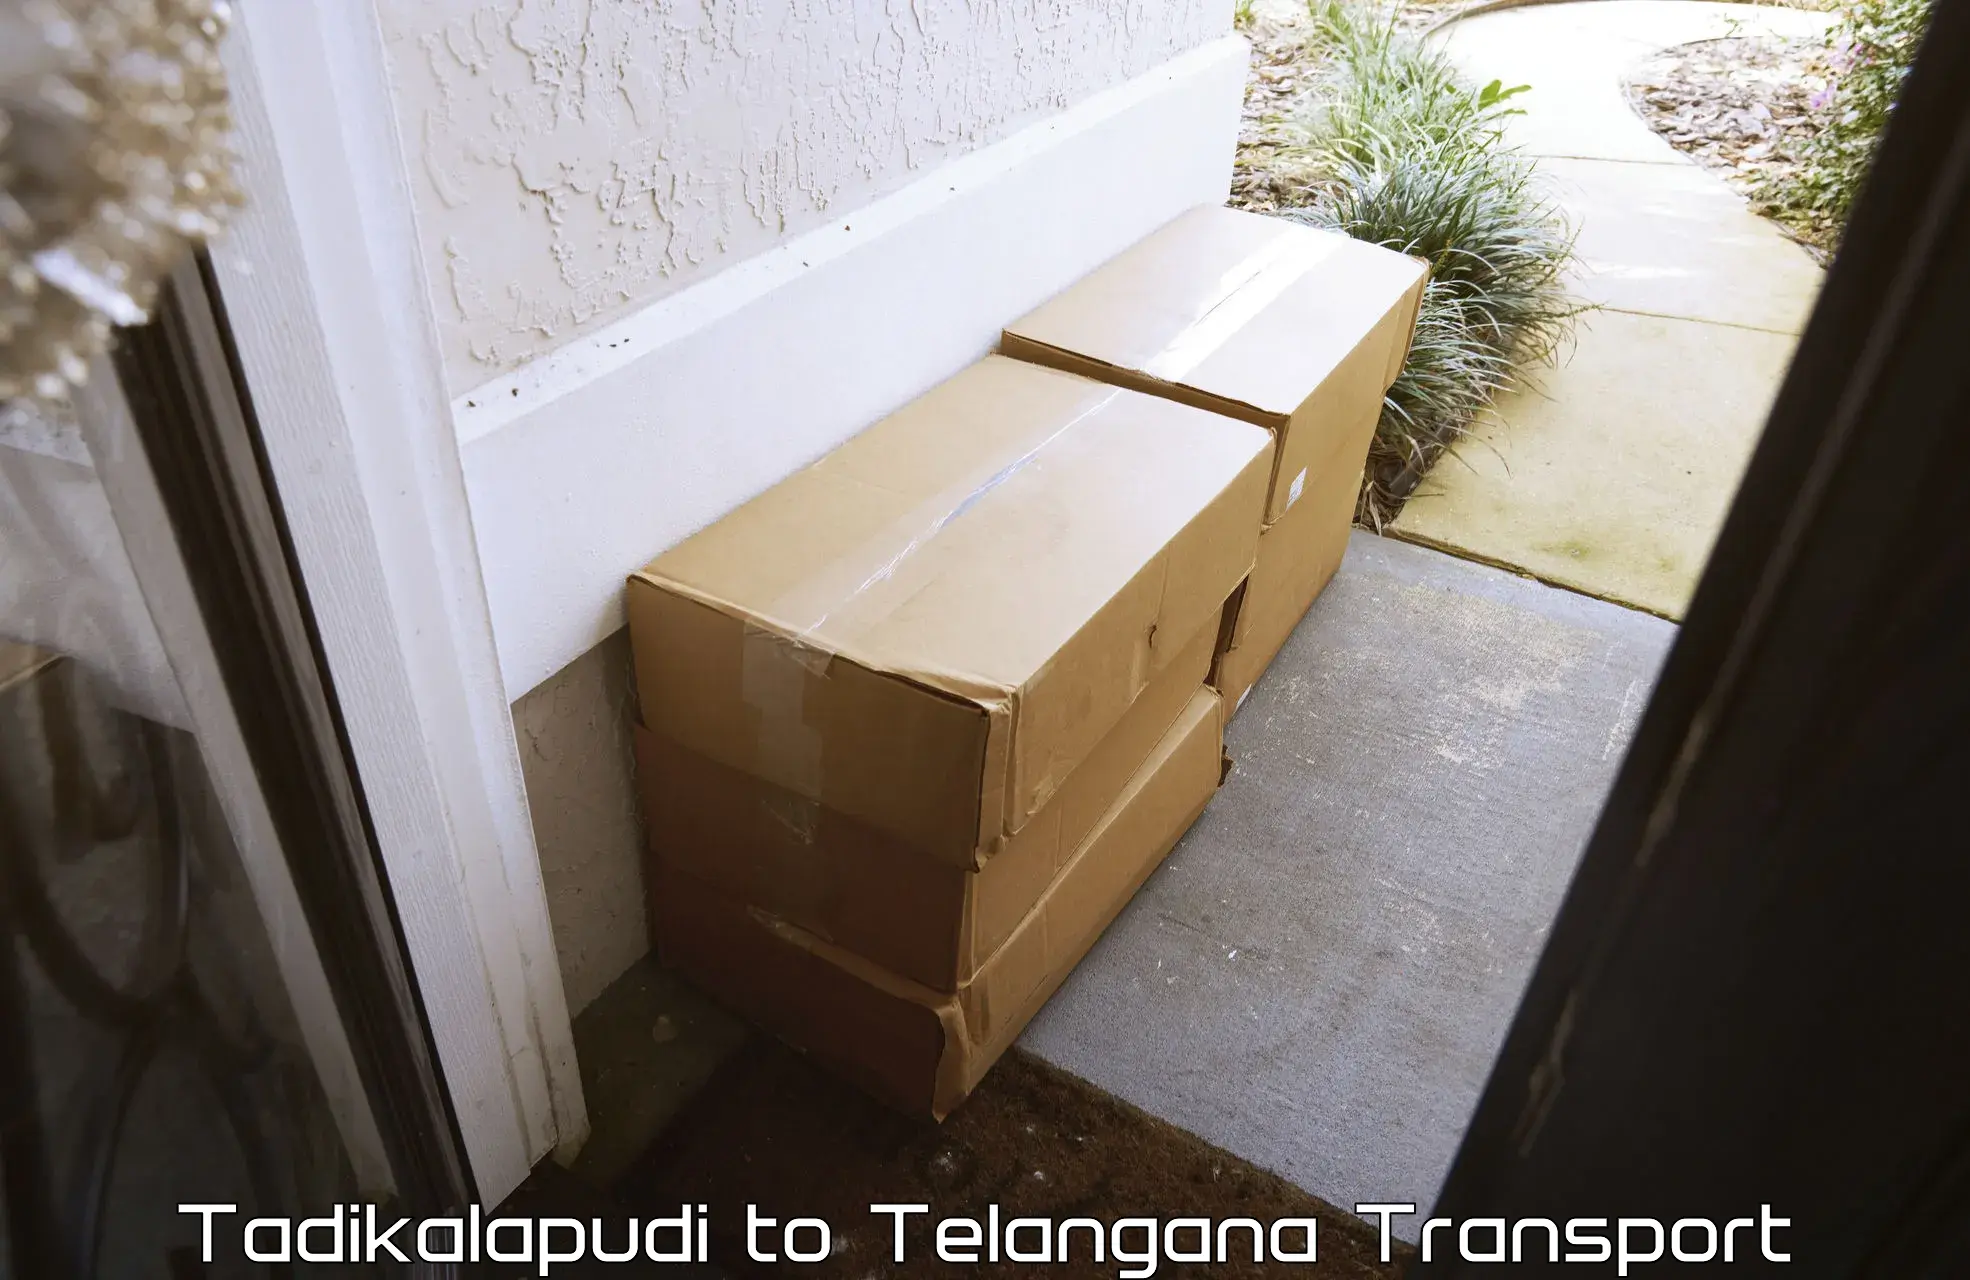 Cargo transportation services Tadikalapudi to Rayaparthi